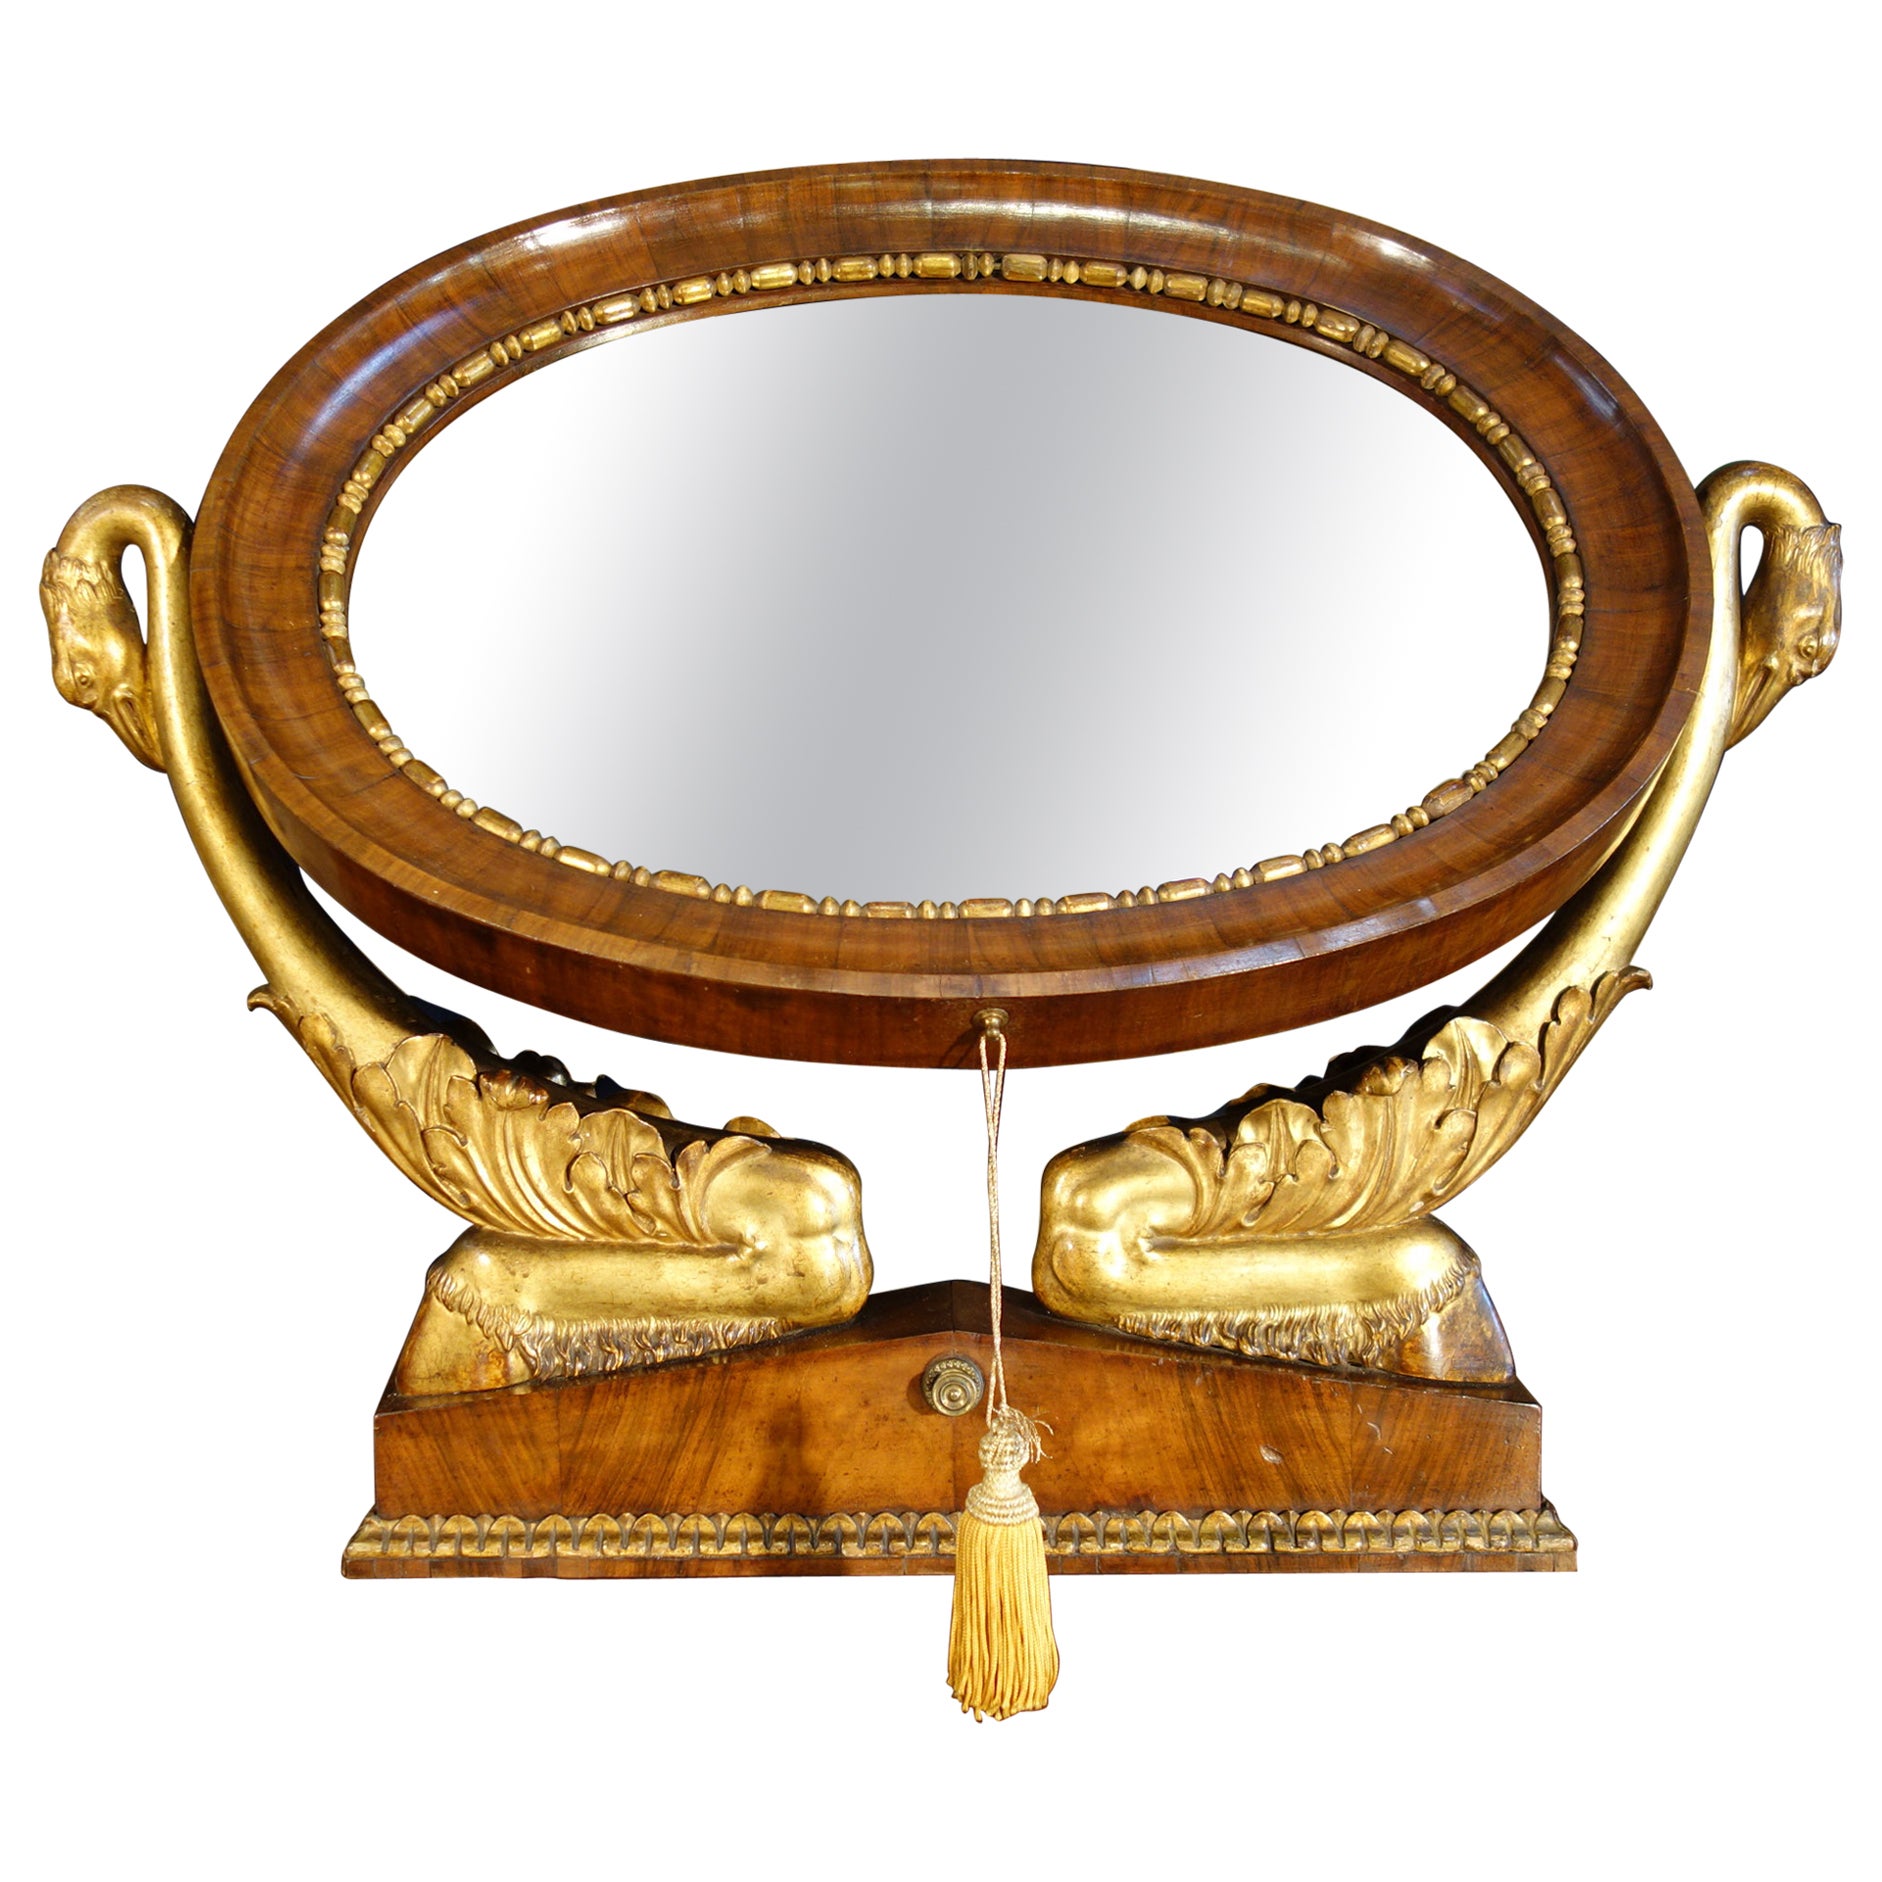 Miroir de table psychédélique Empire italien en noyer avec cygnes dorés et incrustation d'ébène